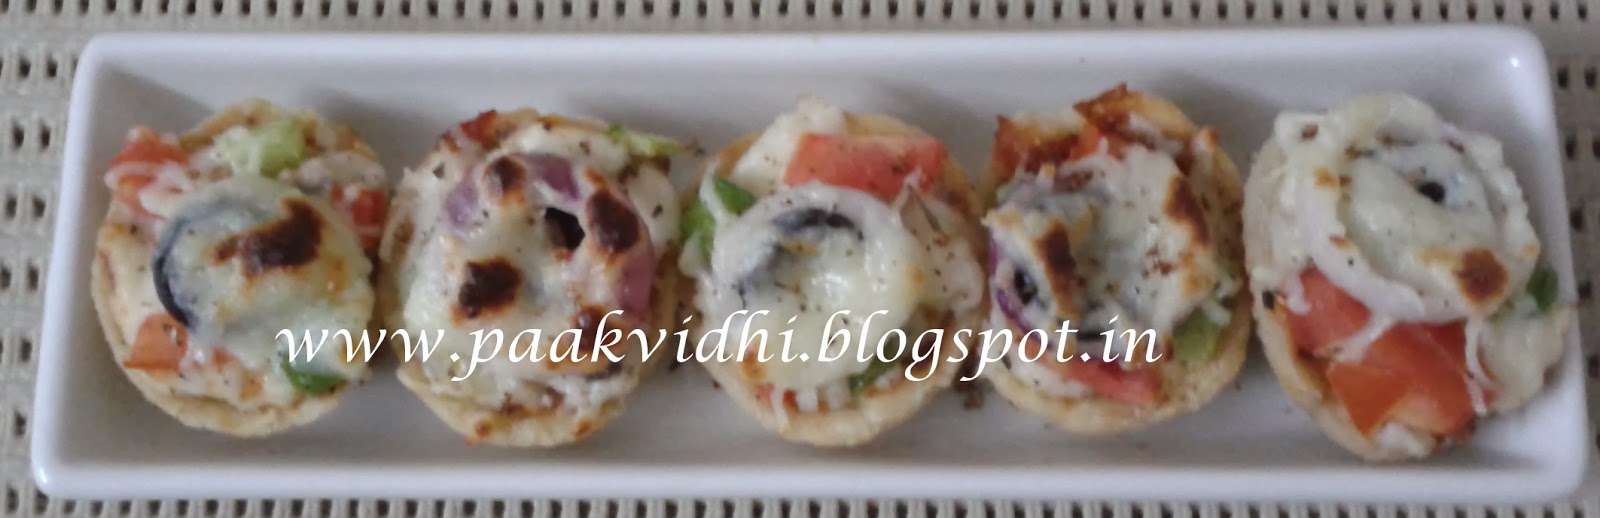 http://paakvidhi.blogspot.in/2014/01/pizza-tarts.html